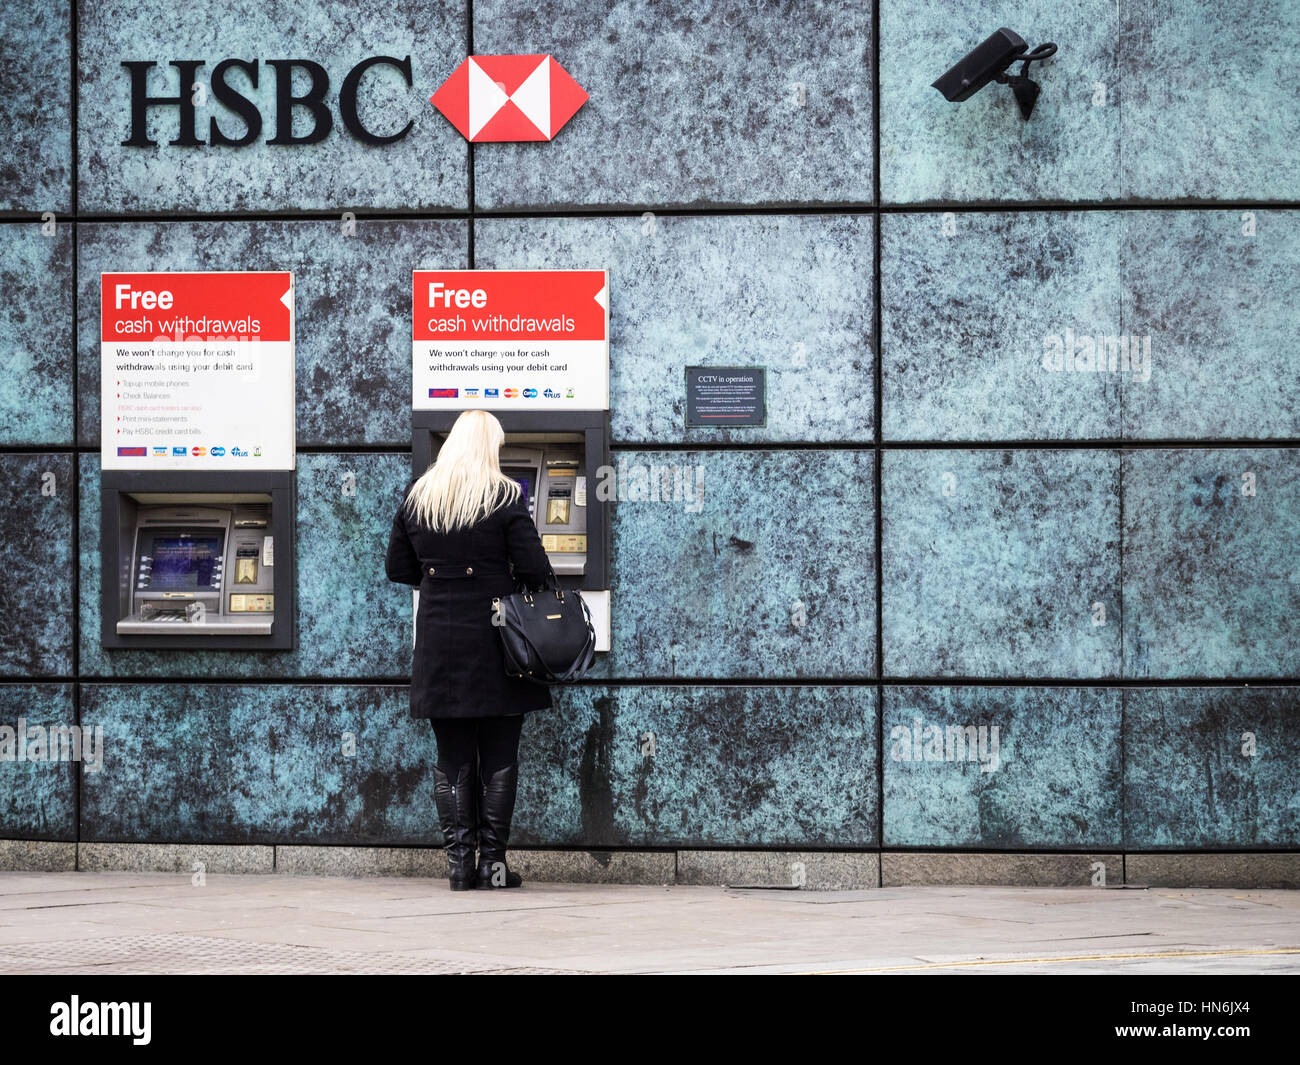 Cajeros HSBC Londres - Una mujer usa un cajeros HSBC en Londres central de vigilancia con cámaras de seguridad en los cajeros. Foto de stock